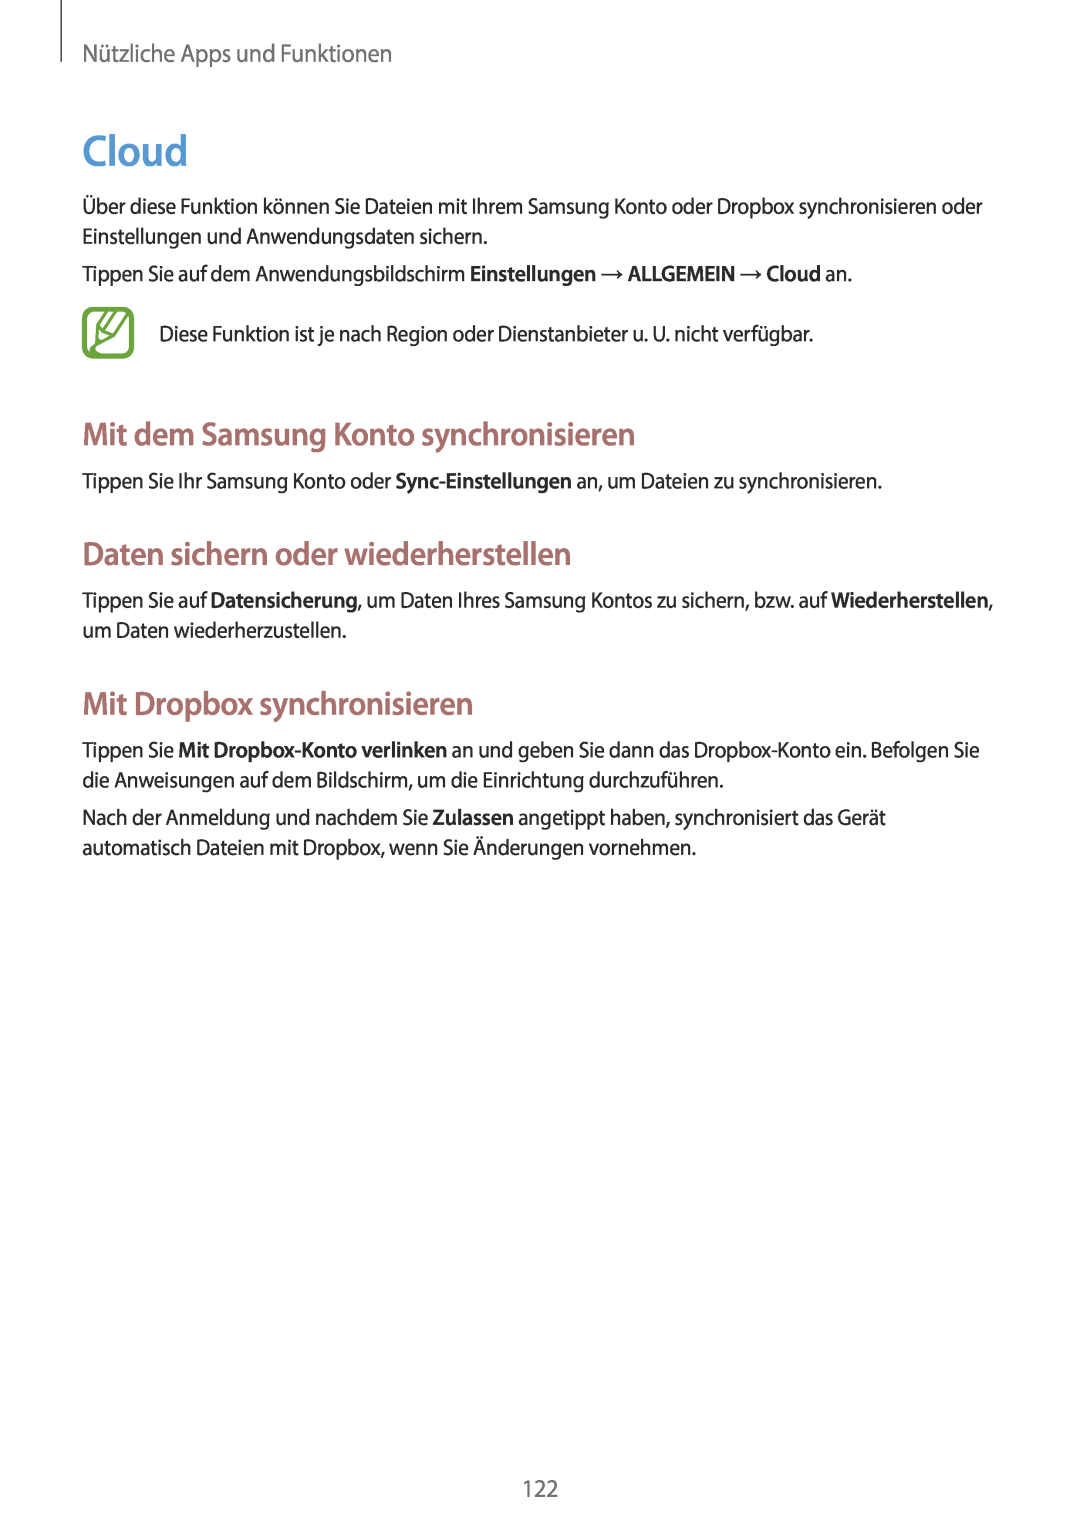 Samsung SM-N9005ZKEVD2, SM-N9005ZKEXEO Cloud, Mit dem Samsung Konto synchronisieren, Daten sichern oder wiederherstellen 